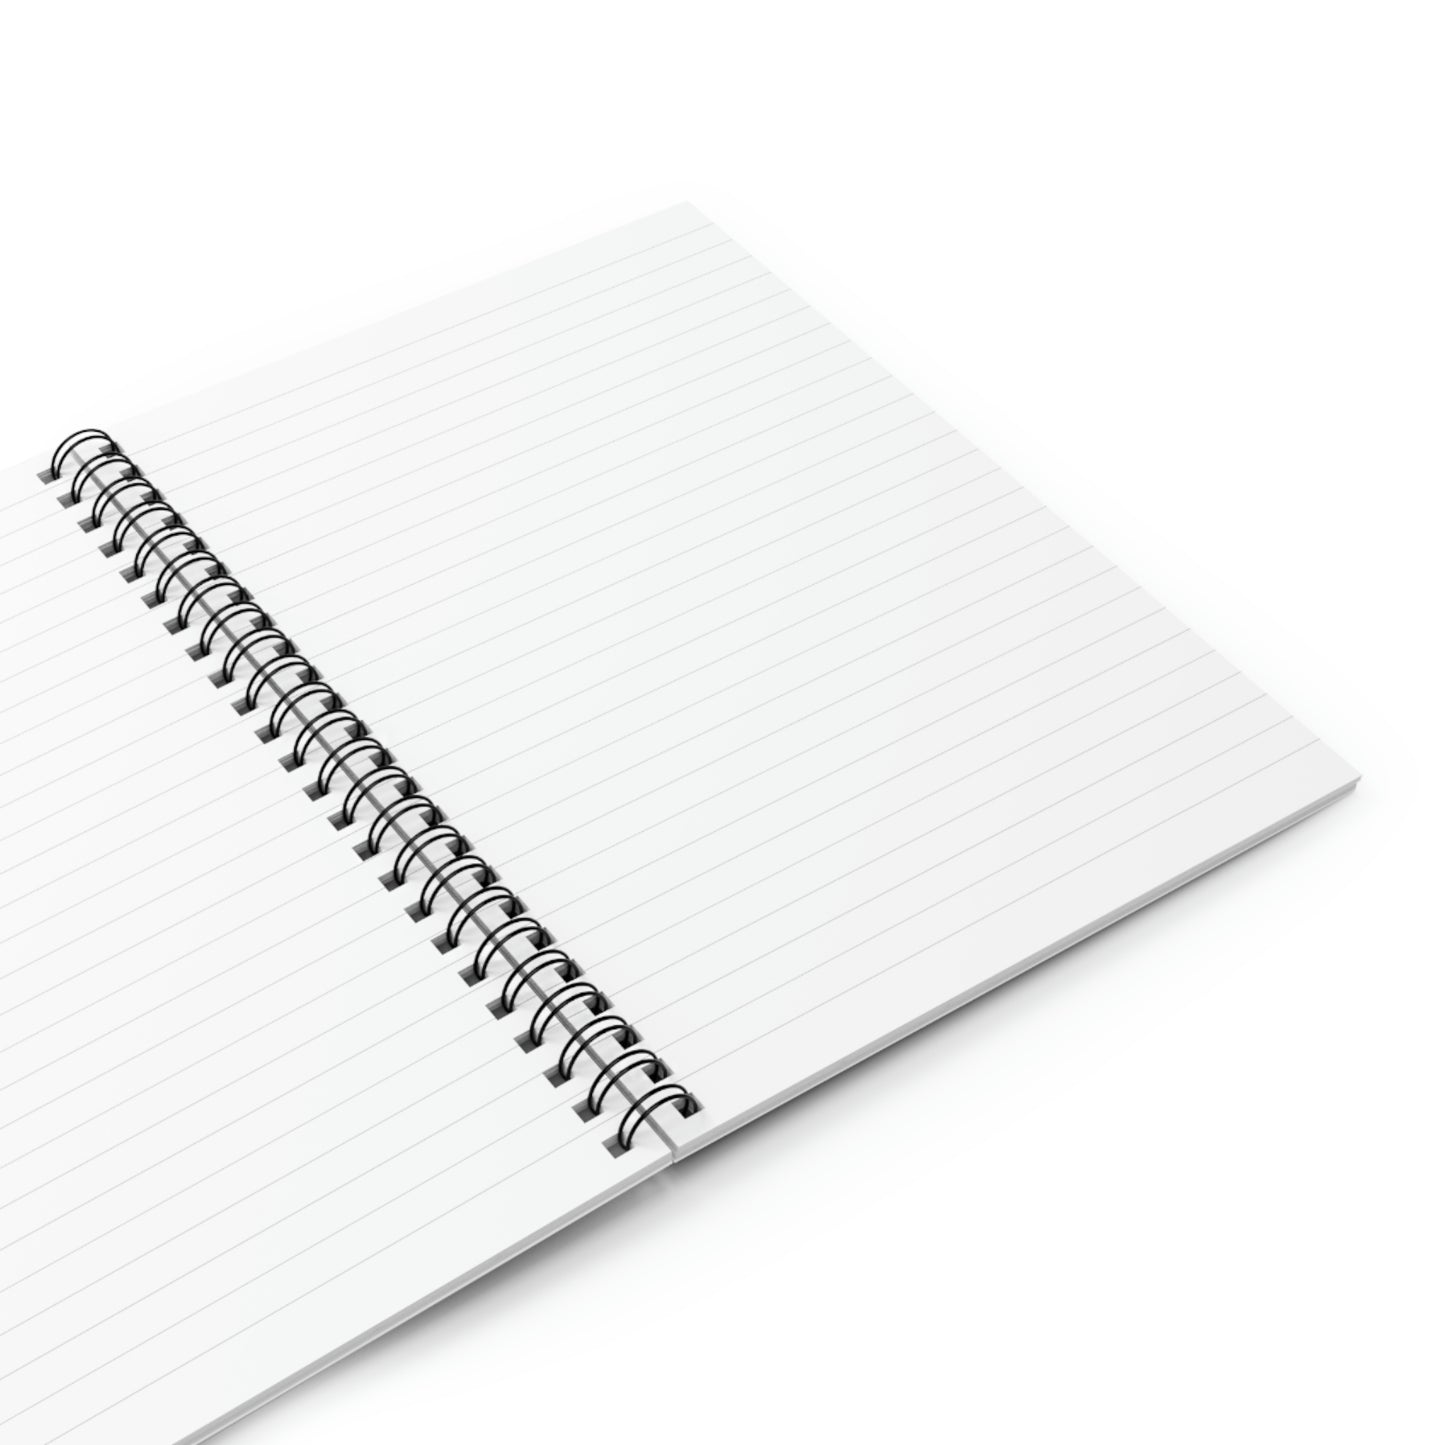 CMC Notebook